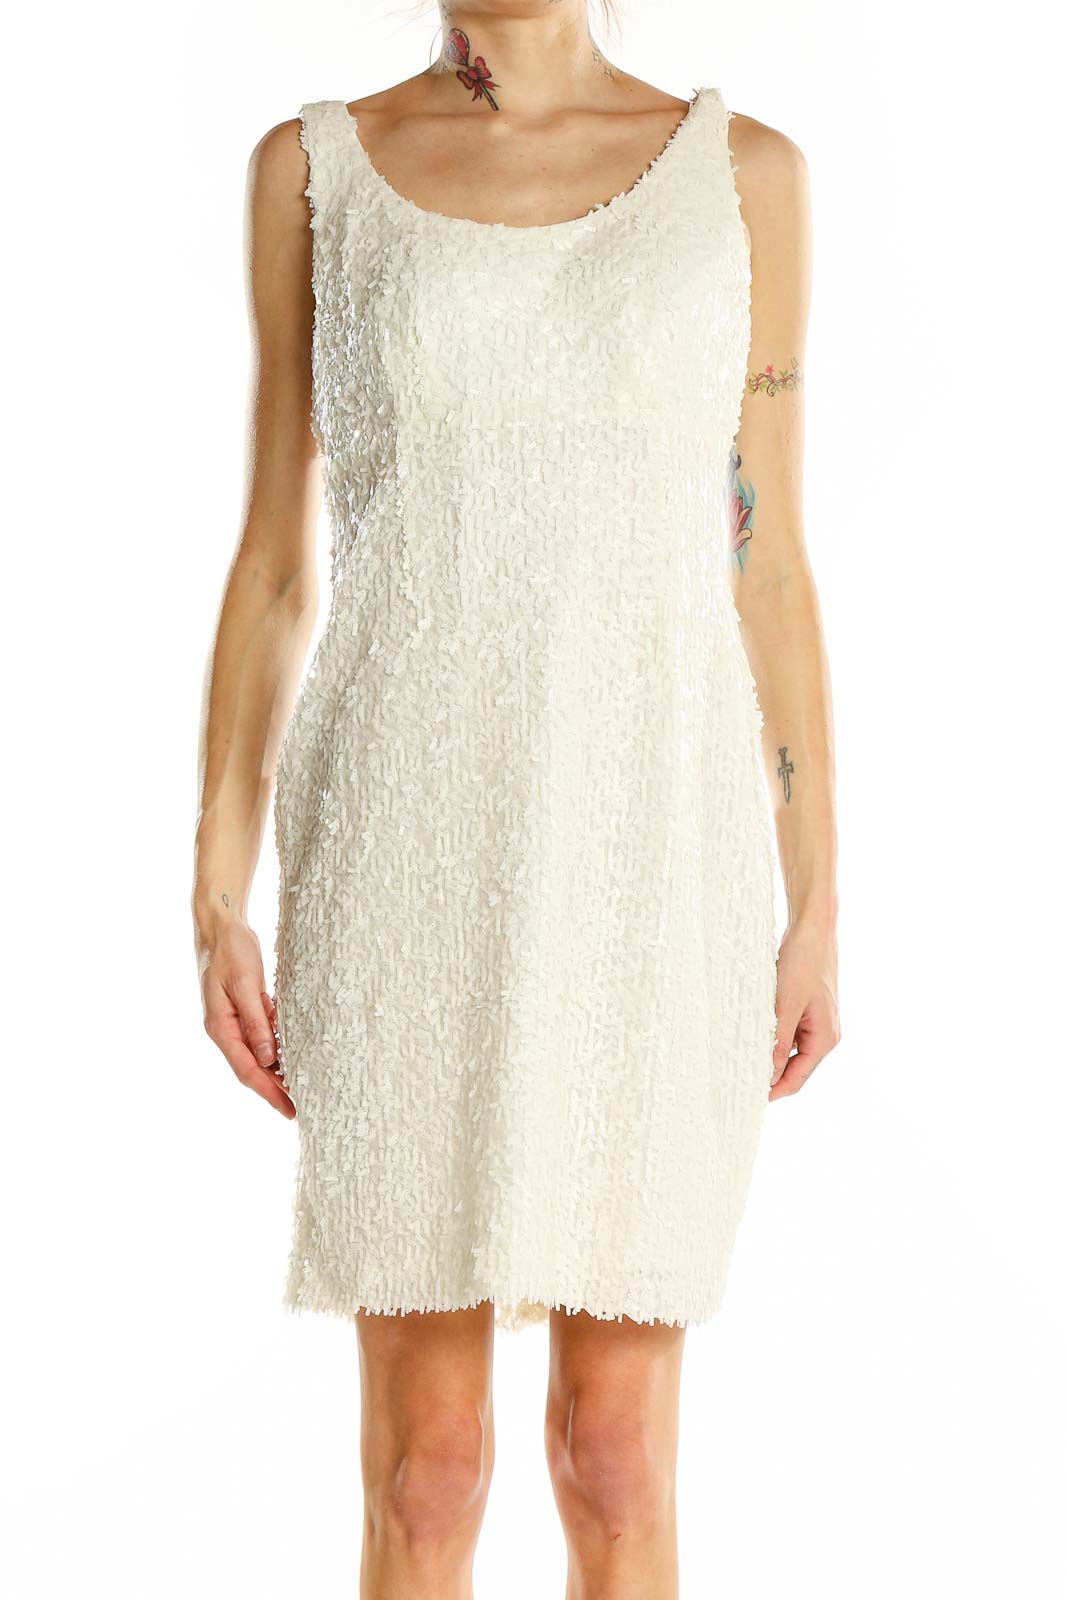 White Textured Fringe Sheath Dress Front